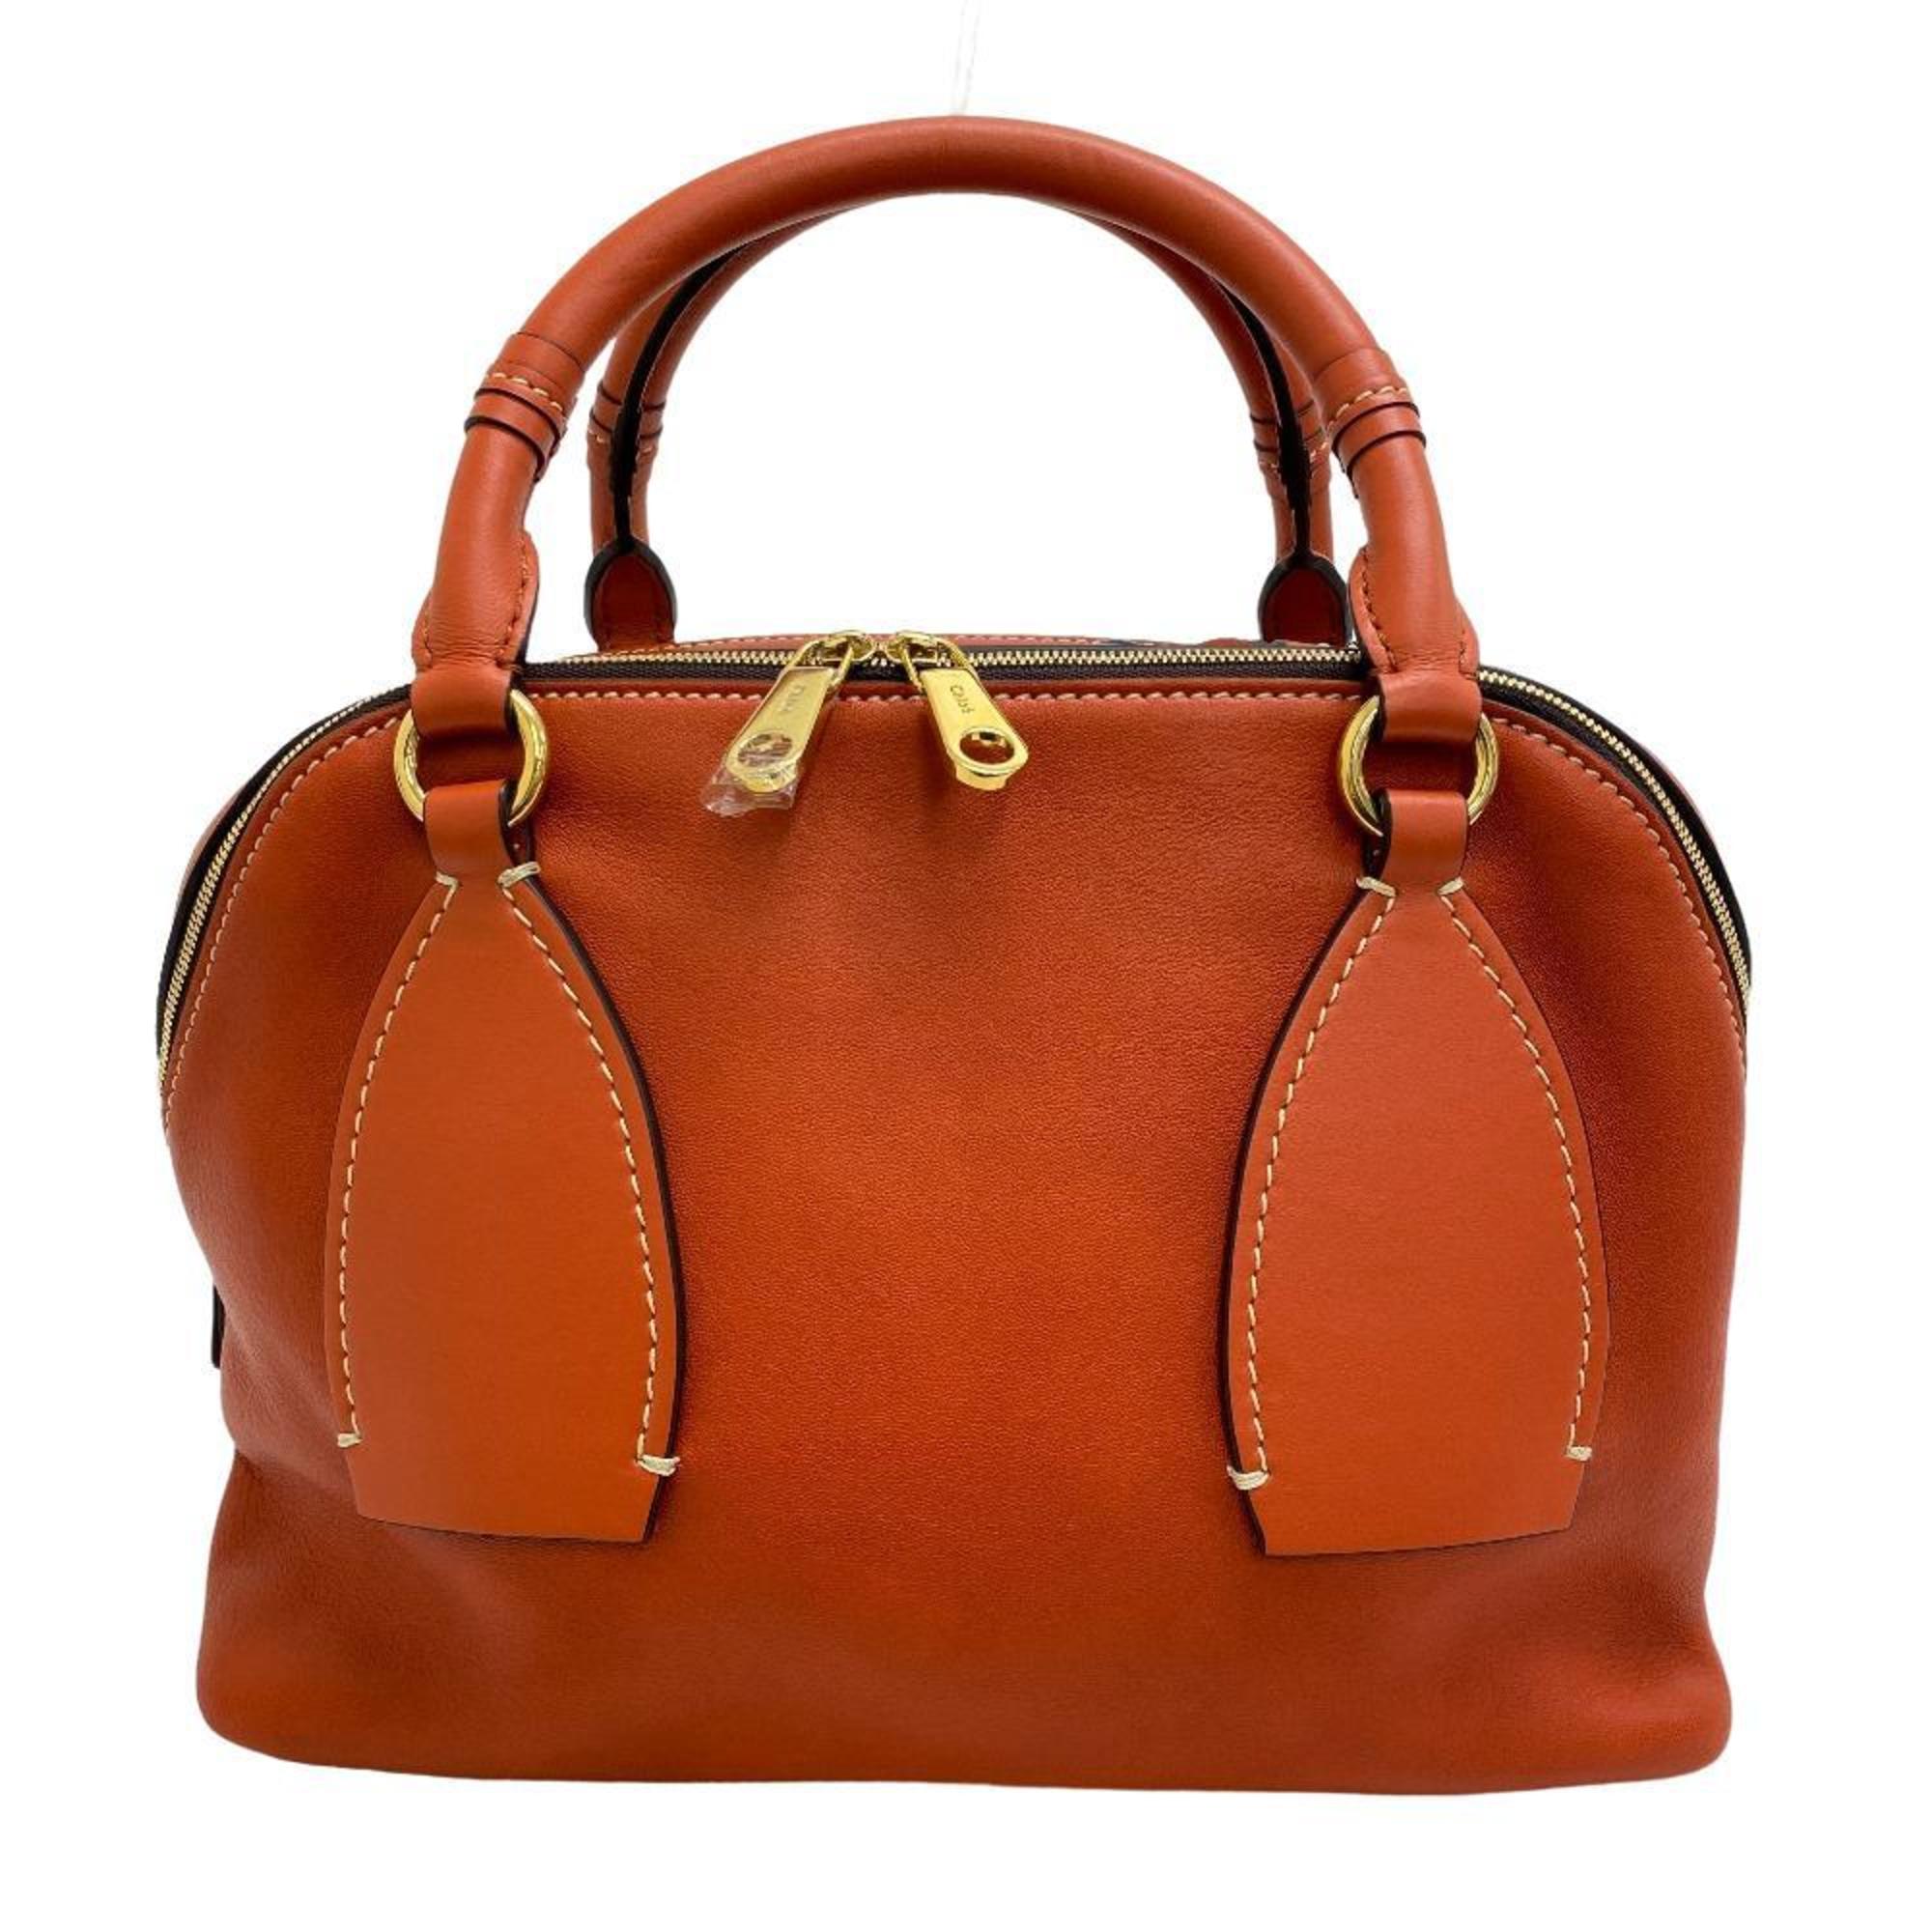 Chloé Chloe 2WAY Shoulder Bag Dahlia Handbag Orange Ladies